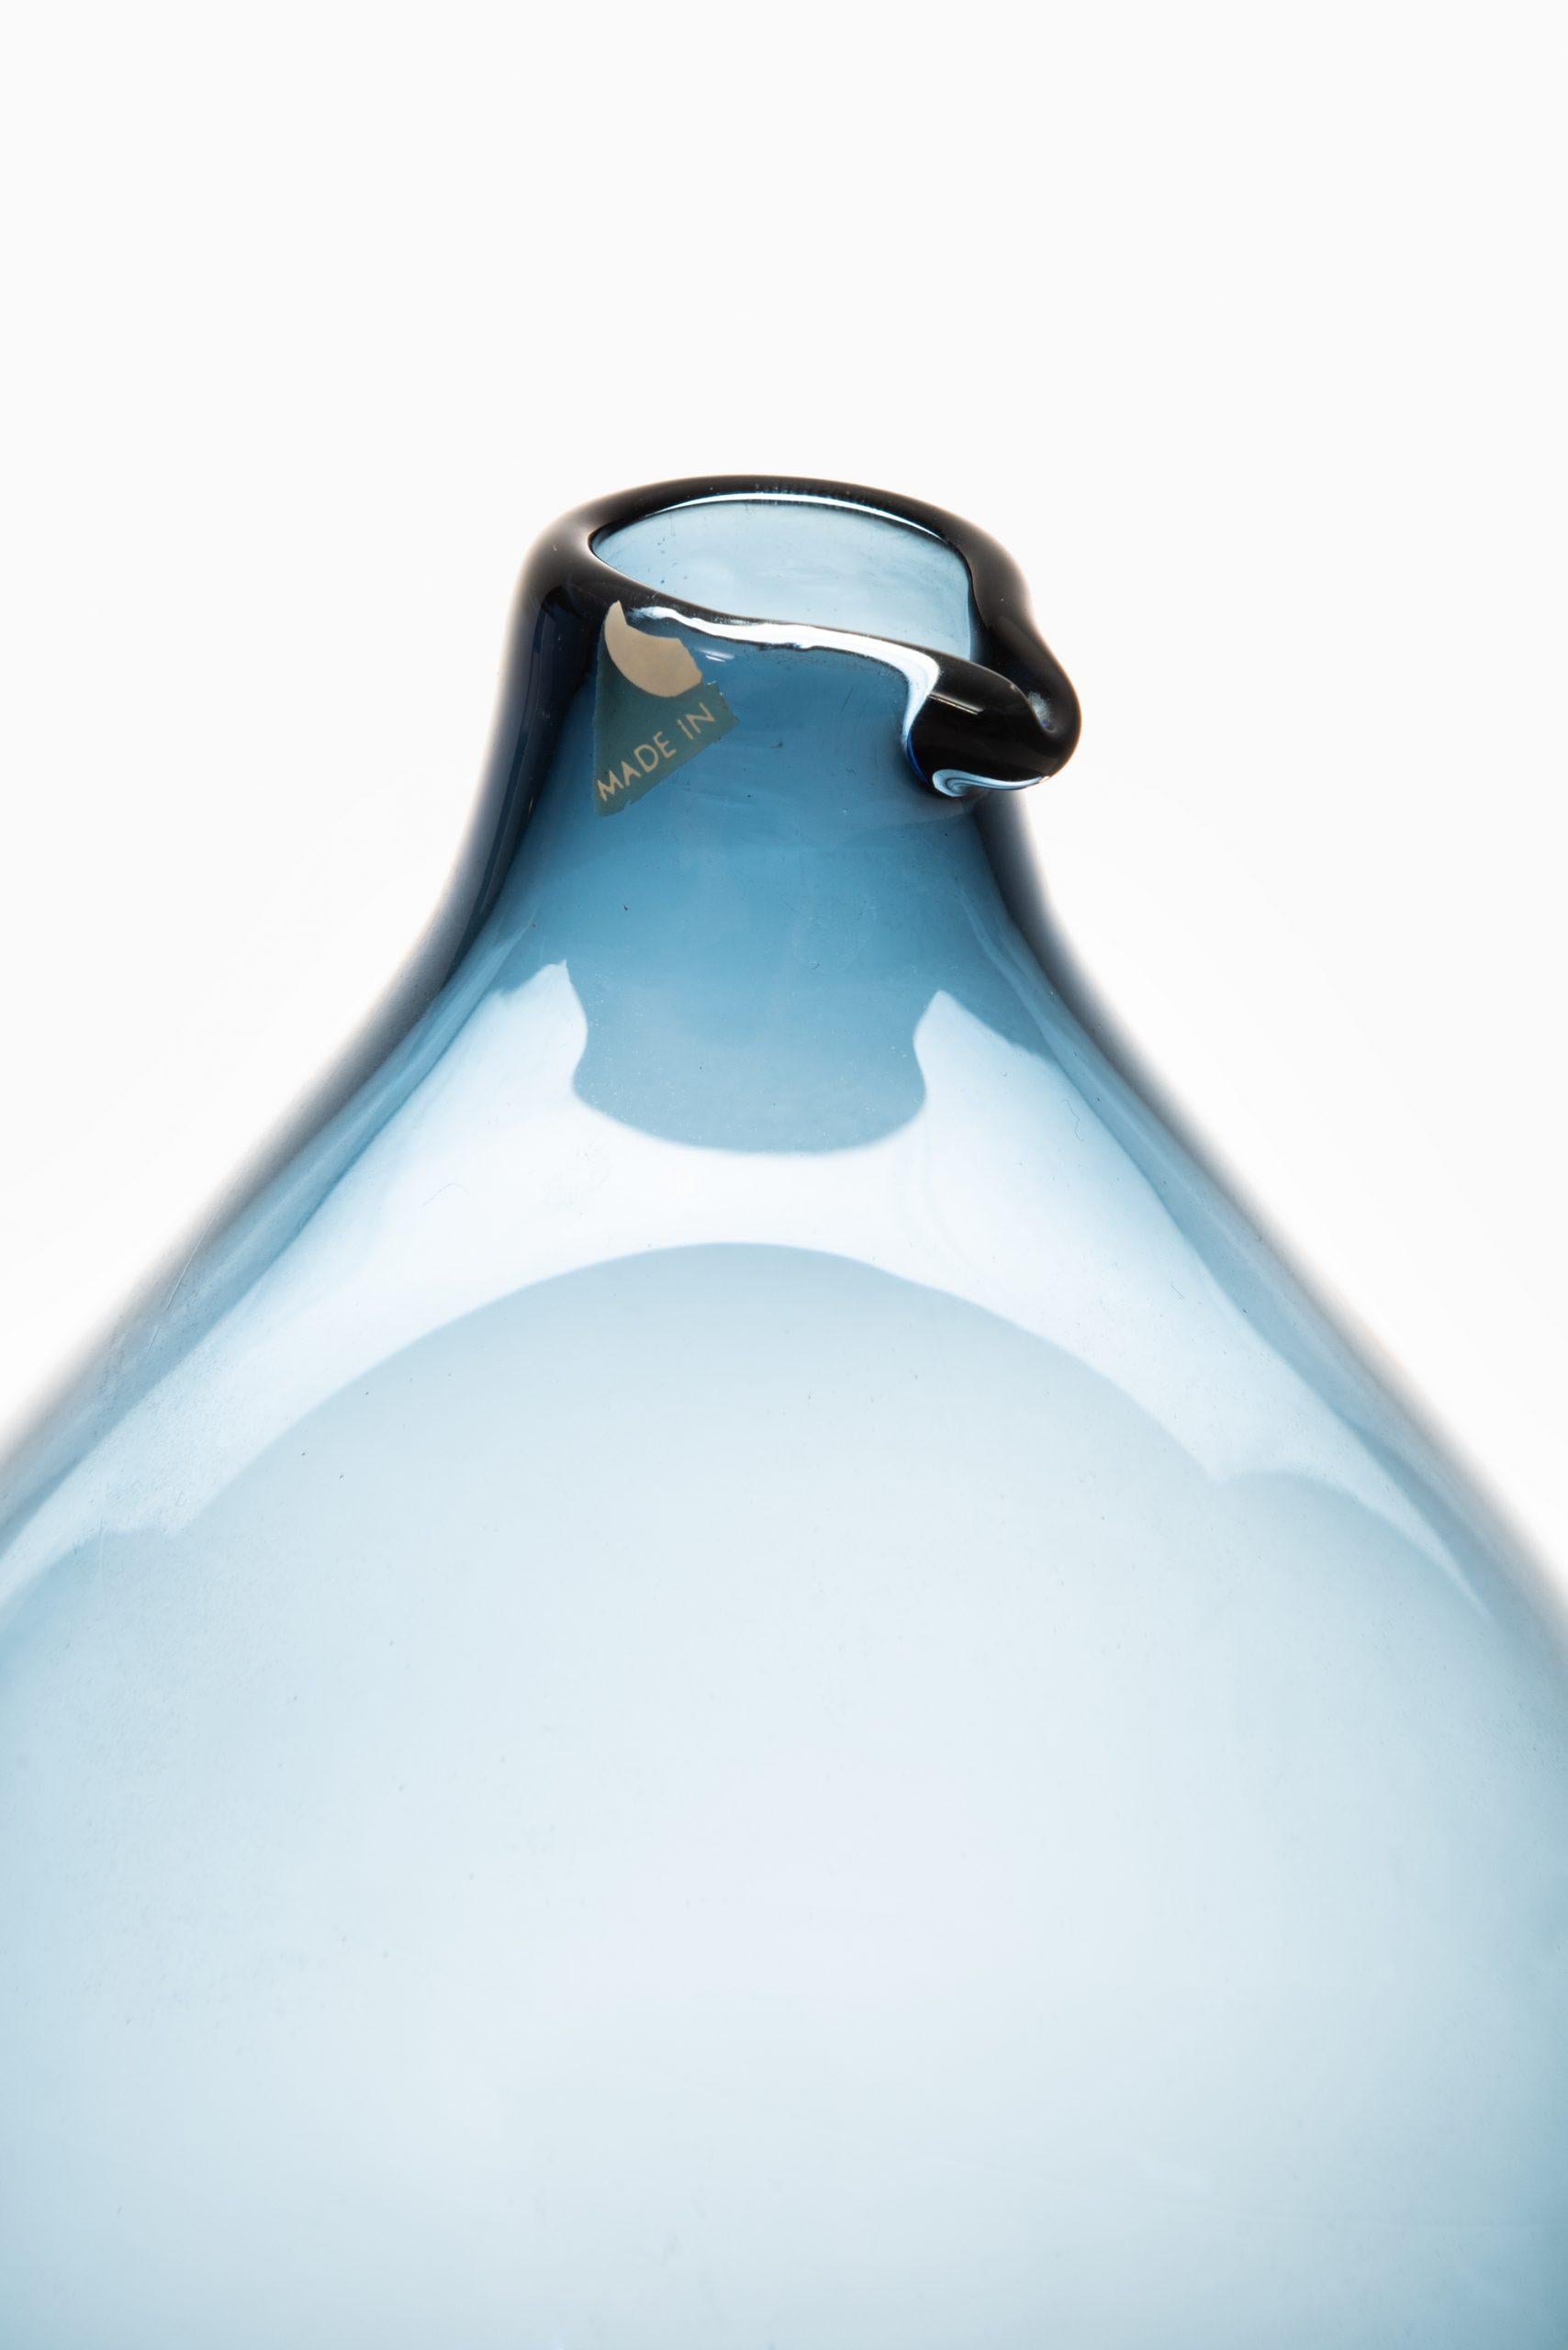 Glasflasche / Vase Modell Pullo / Vogelvase entworfen von Timo Sarpaneva. Produziert von Iittala in Finnland.